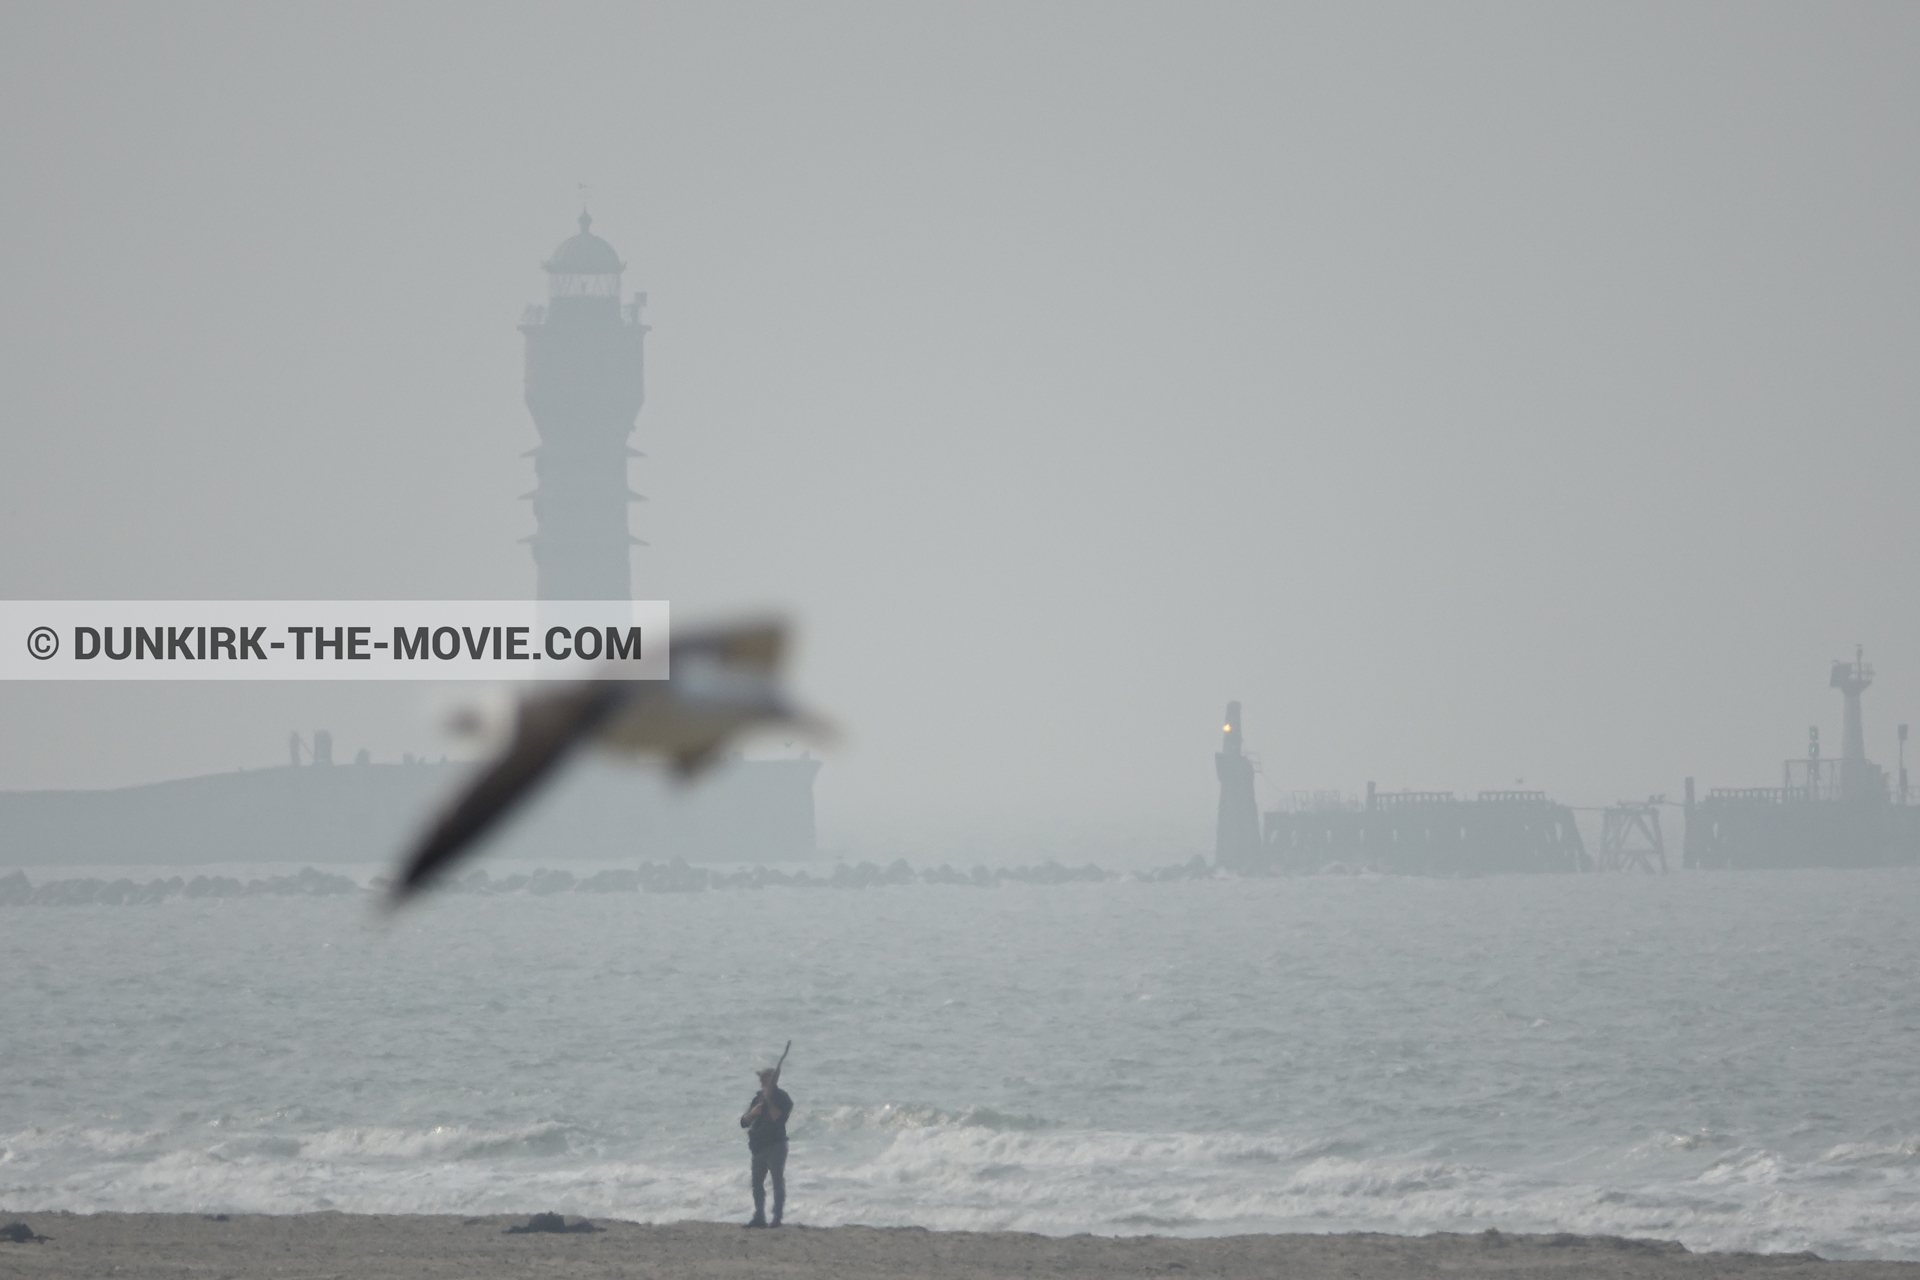 Fotos con cielo gris, extras, faro de Saint-Pol-sur-Mer, playa,  durante el rodaje de la película Dunkerque de Nolan